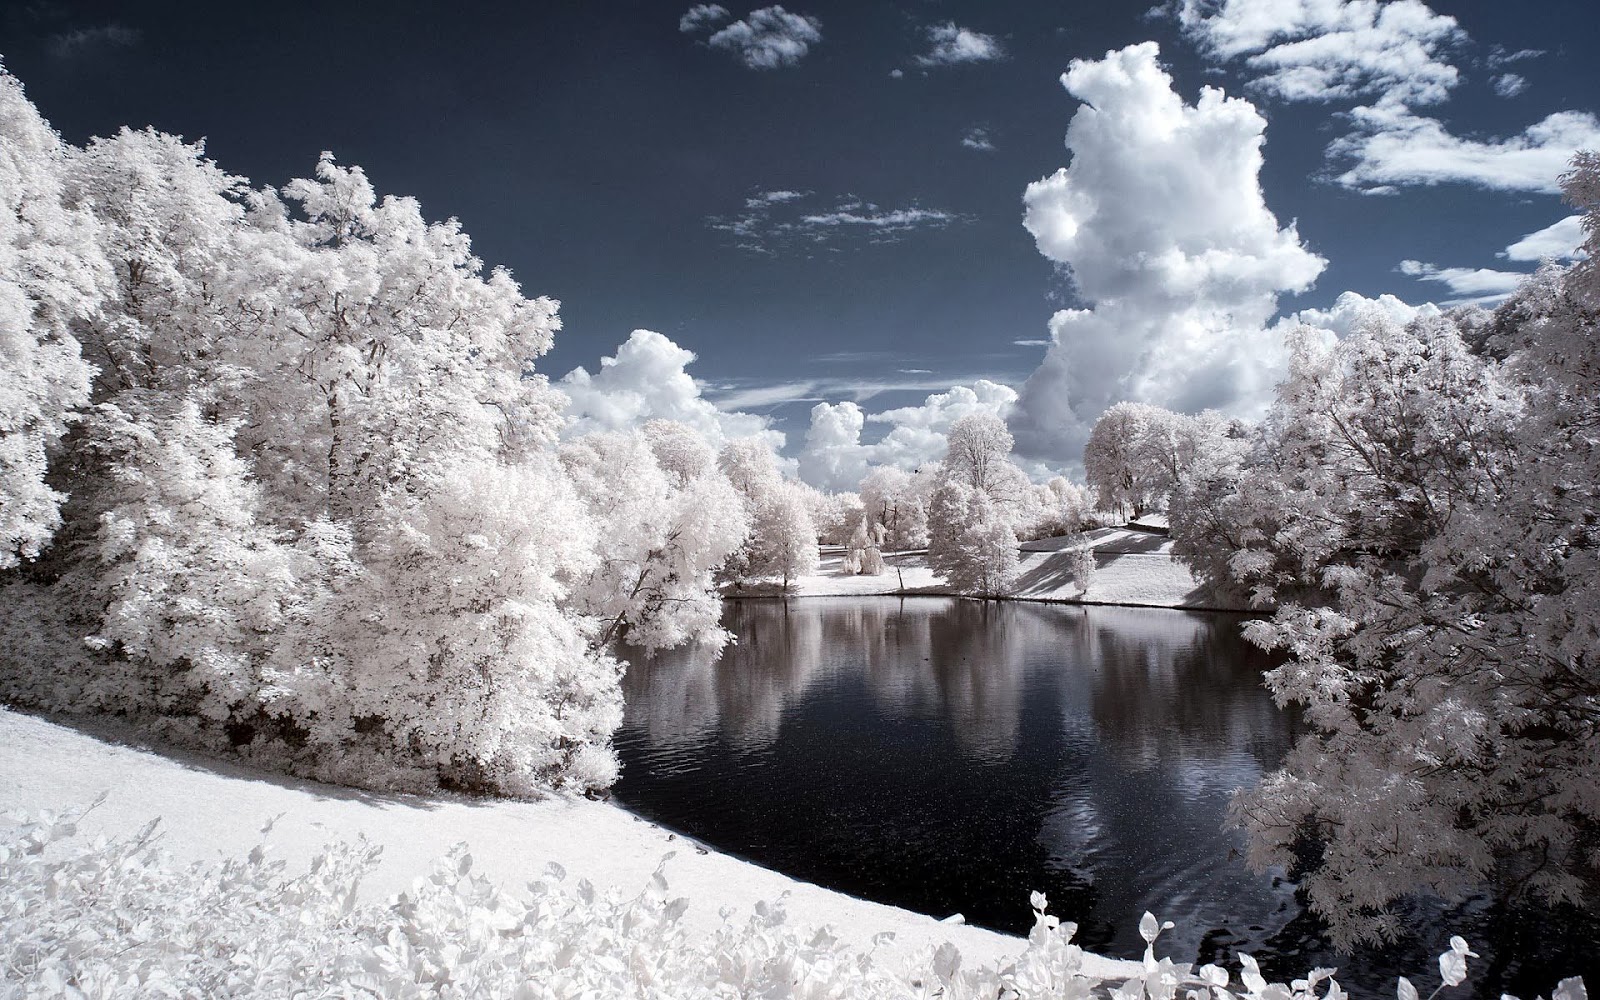 Winter wonderland achtergrond met witte bomen om een meer